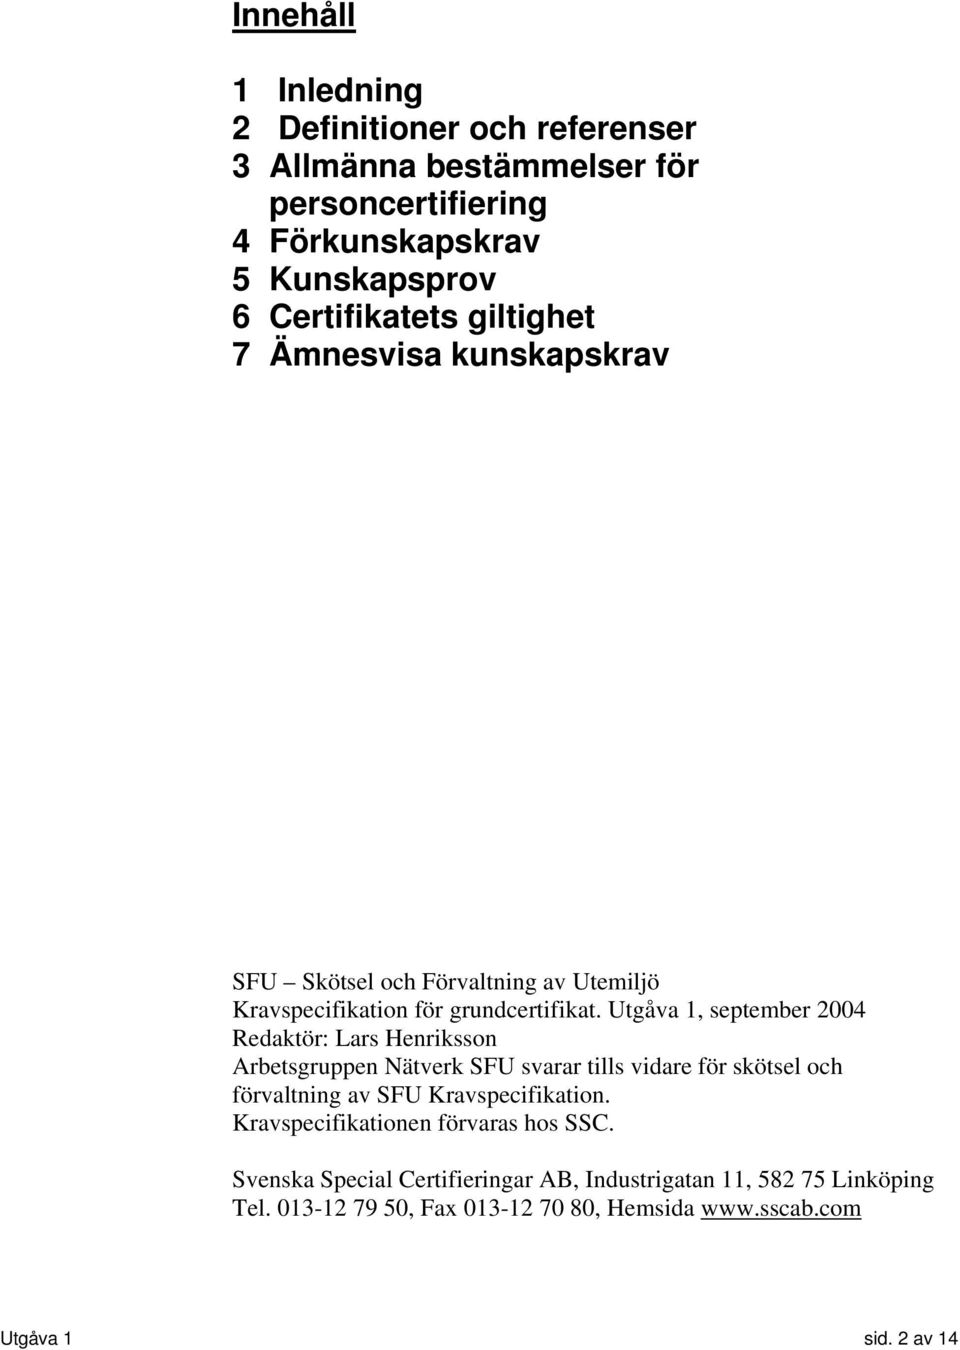 Utgåva 1, september 2004 Redaktör: Lars Henriksson Arbetsgruppen Nätverk SFU svarar tills vidare för skötsel och förvaltning av SFU Kravspecifikation.